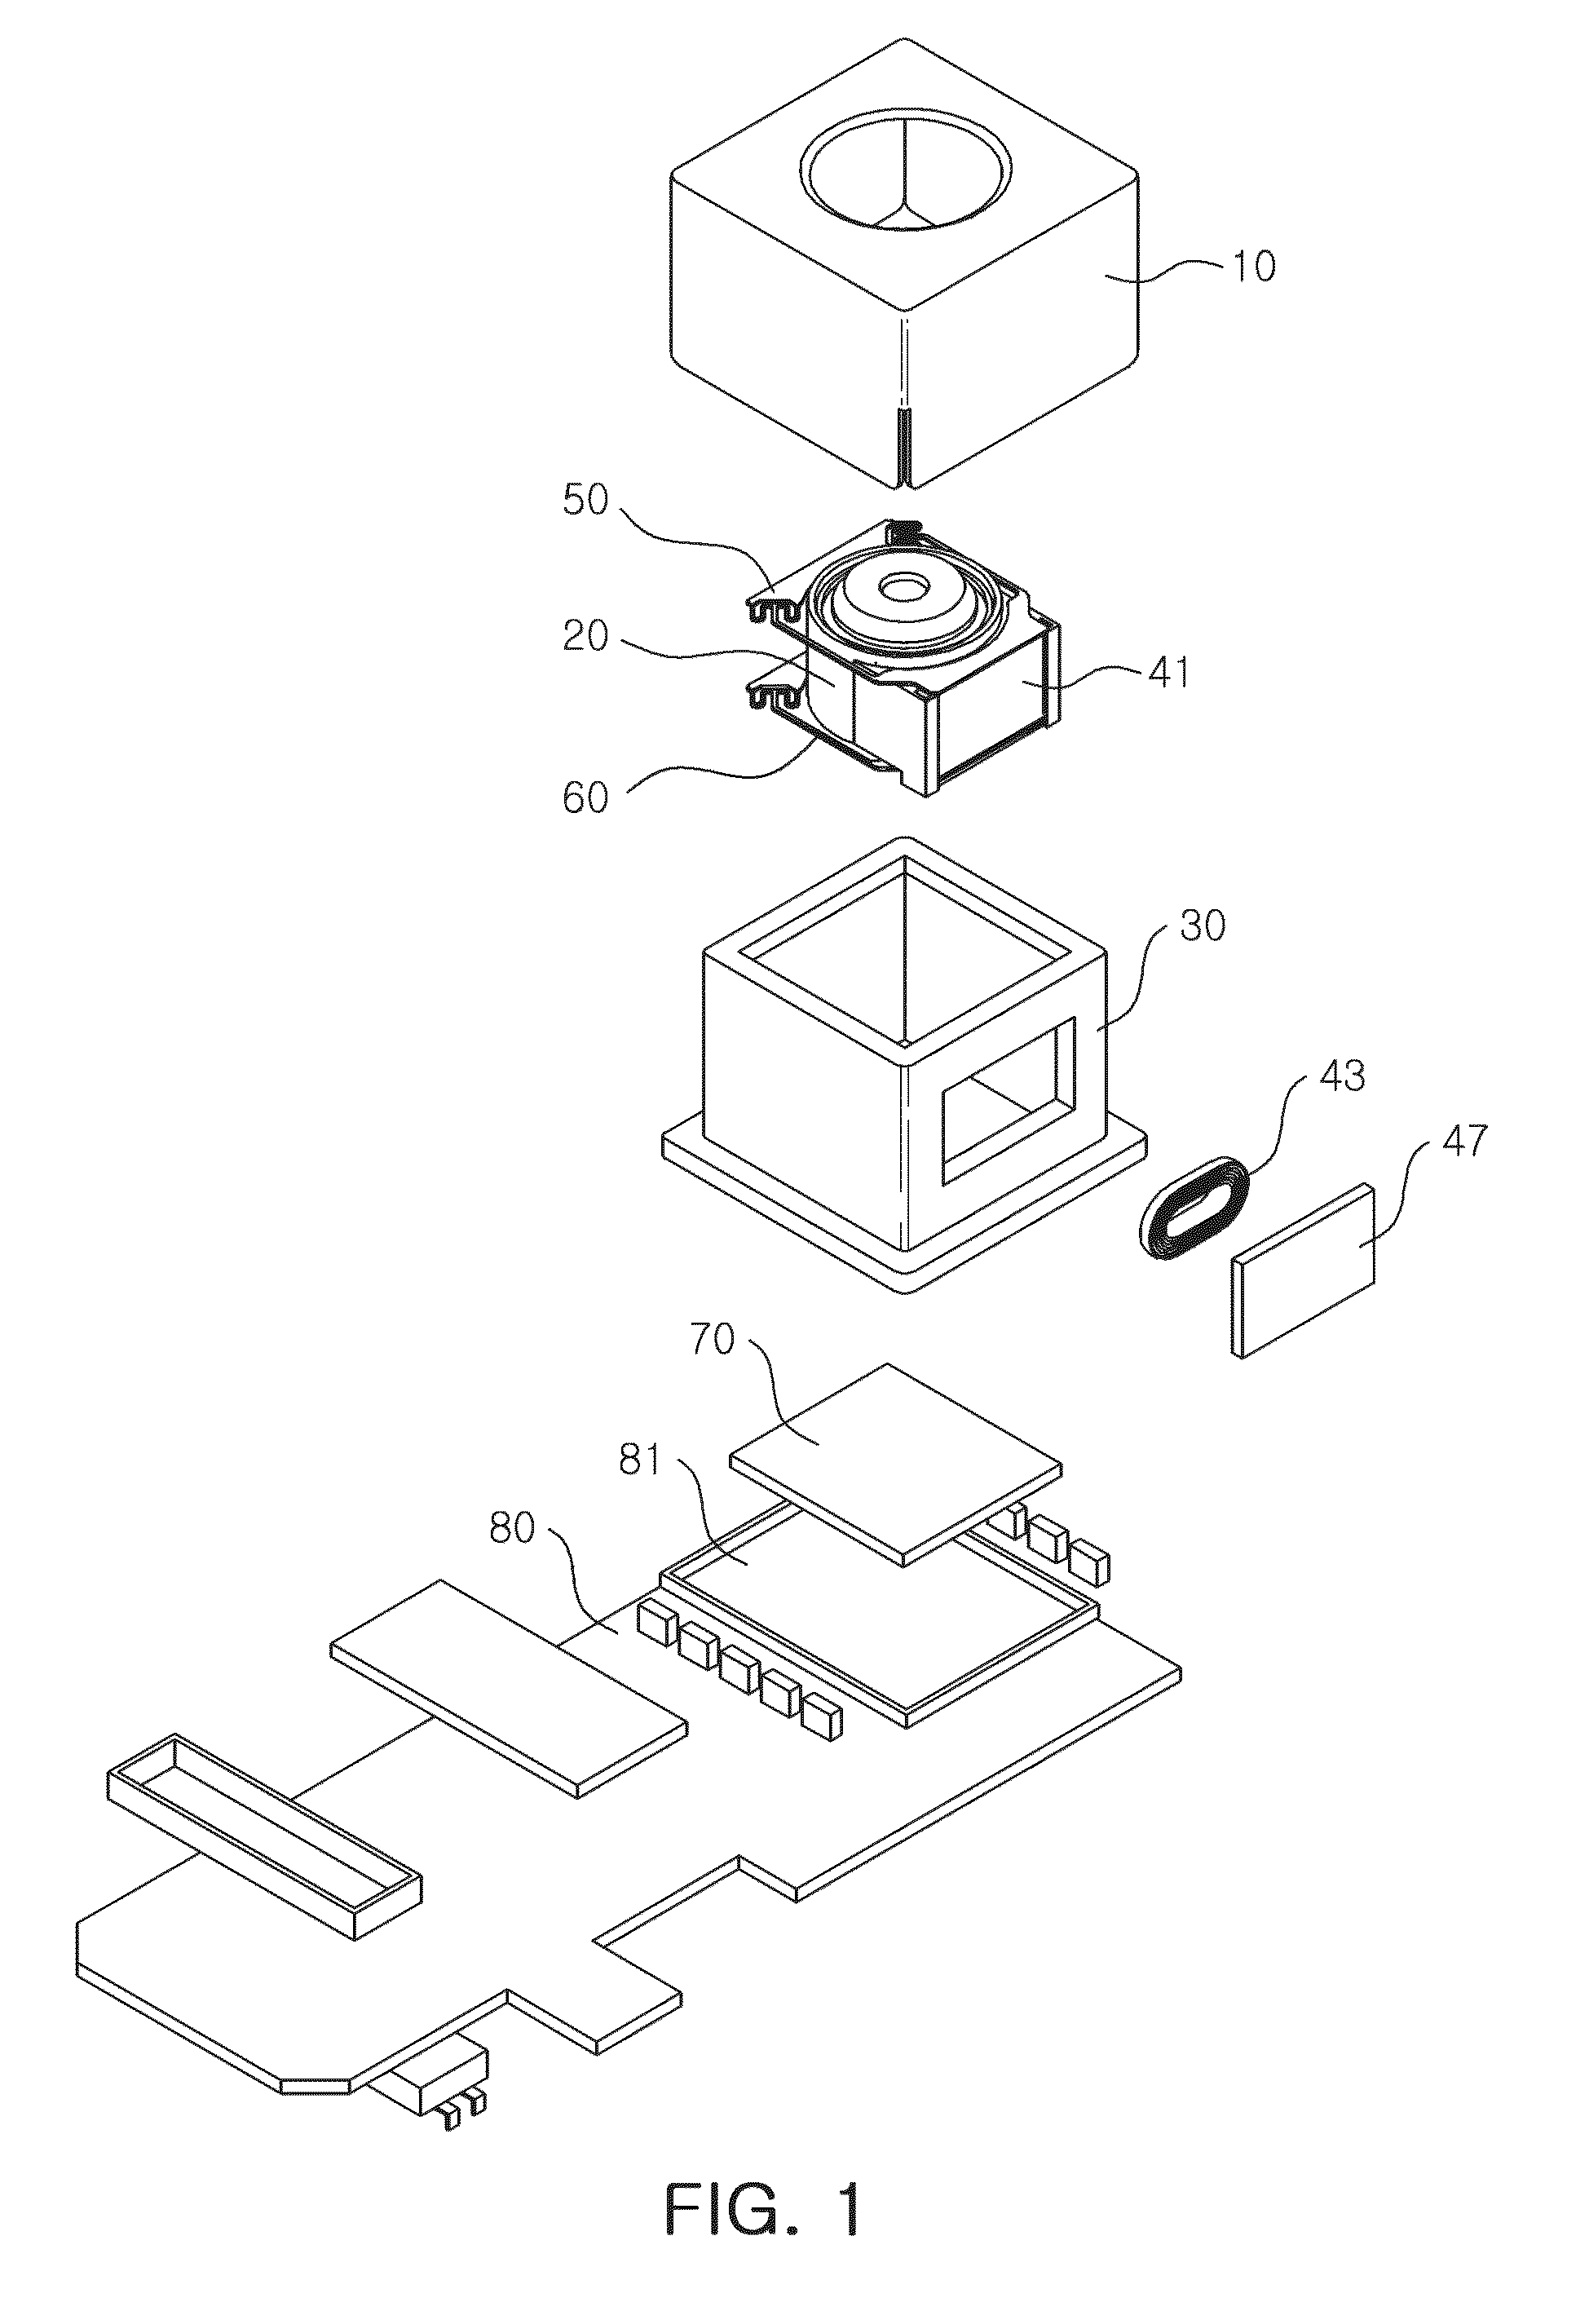 Camera module